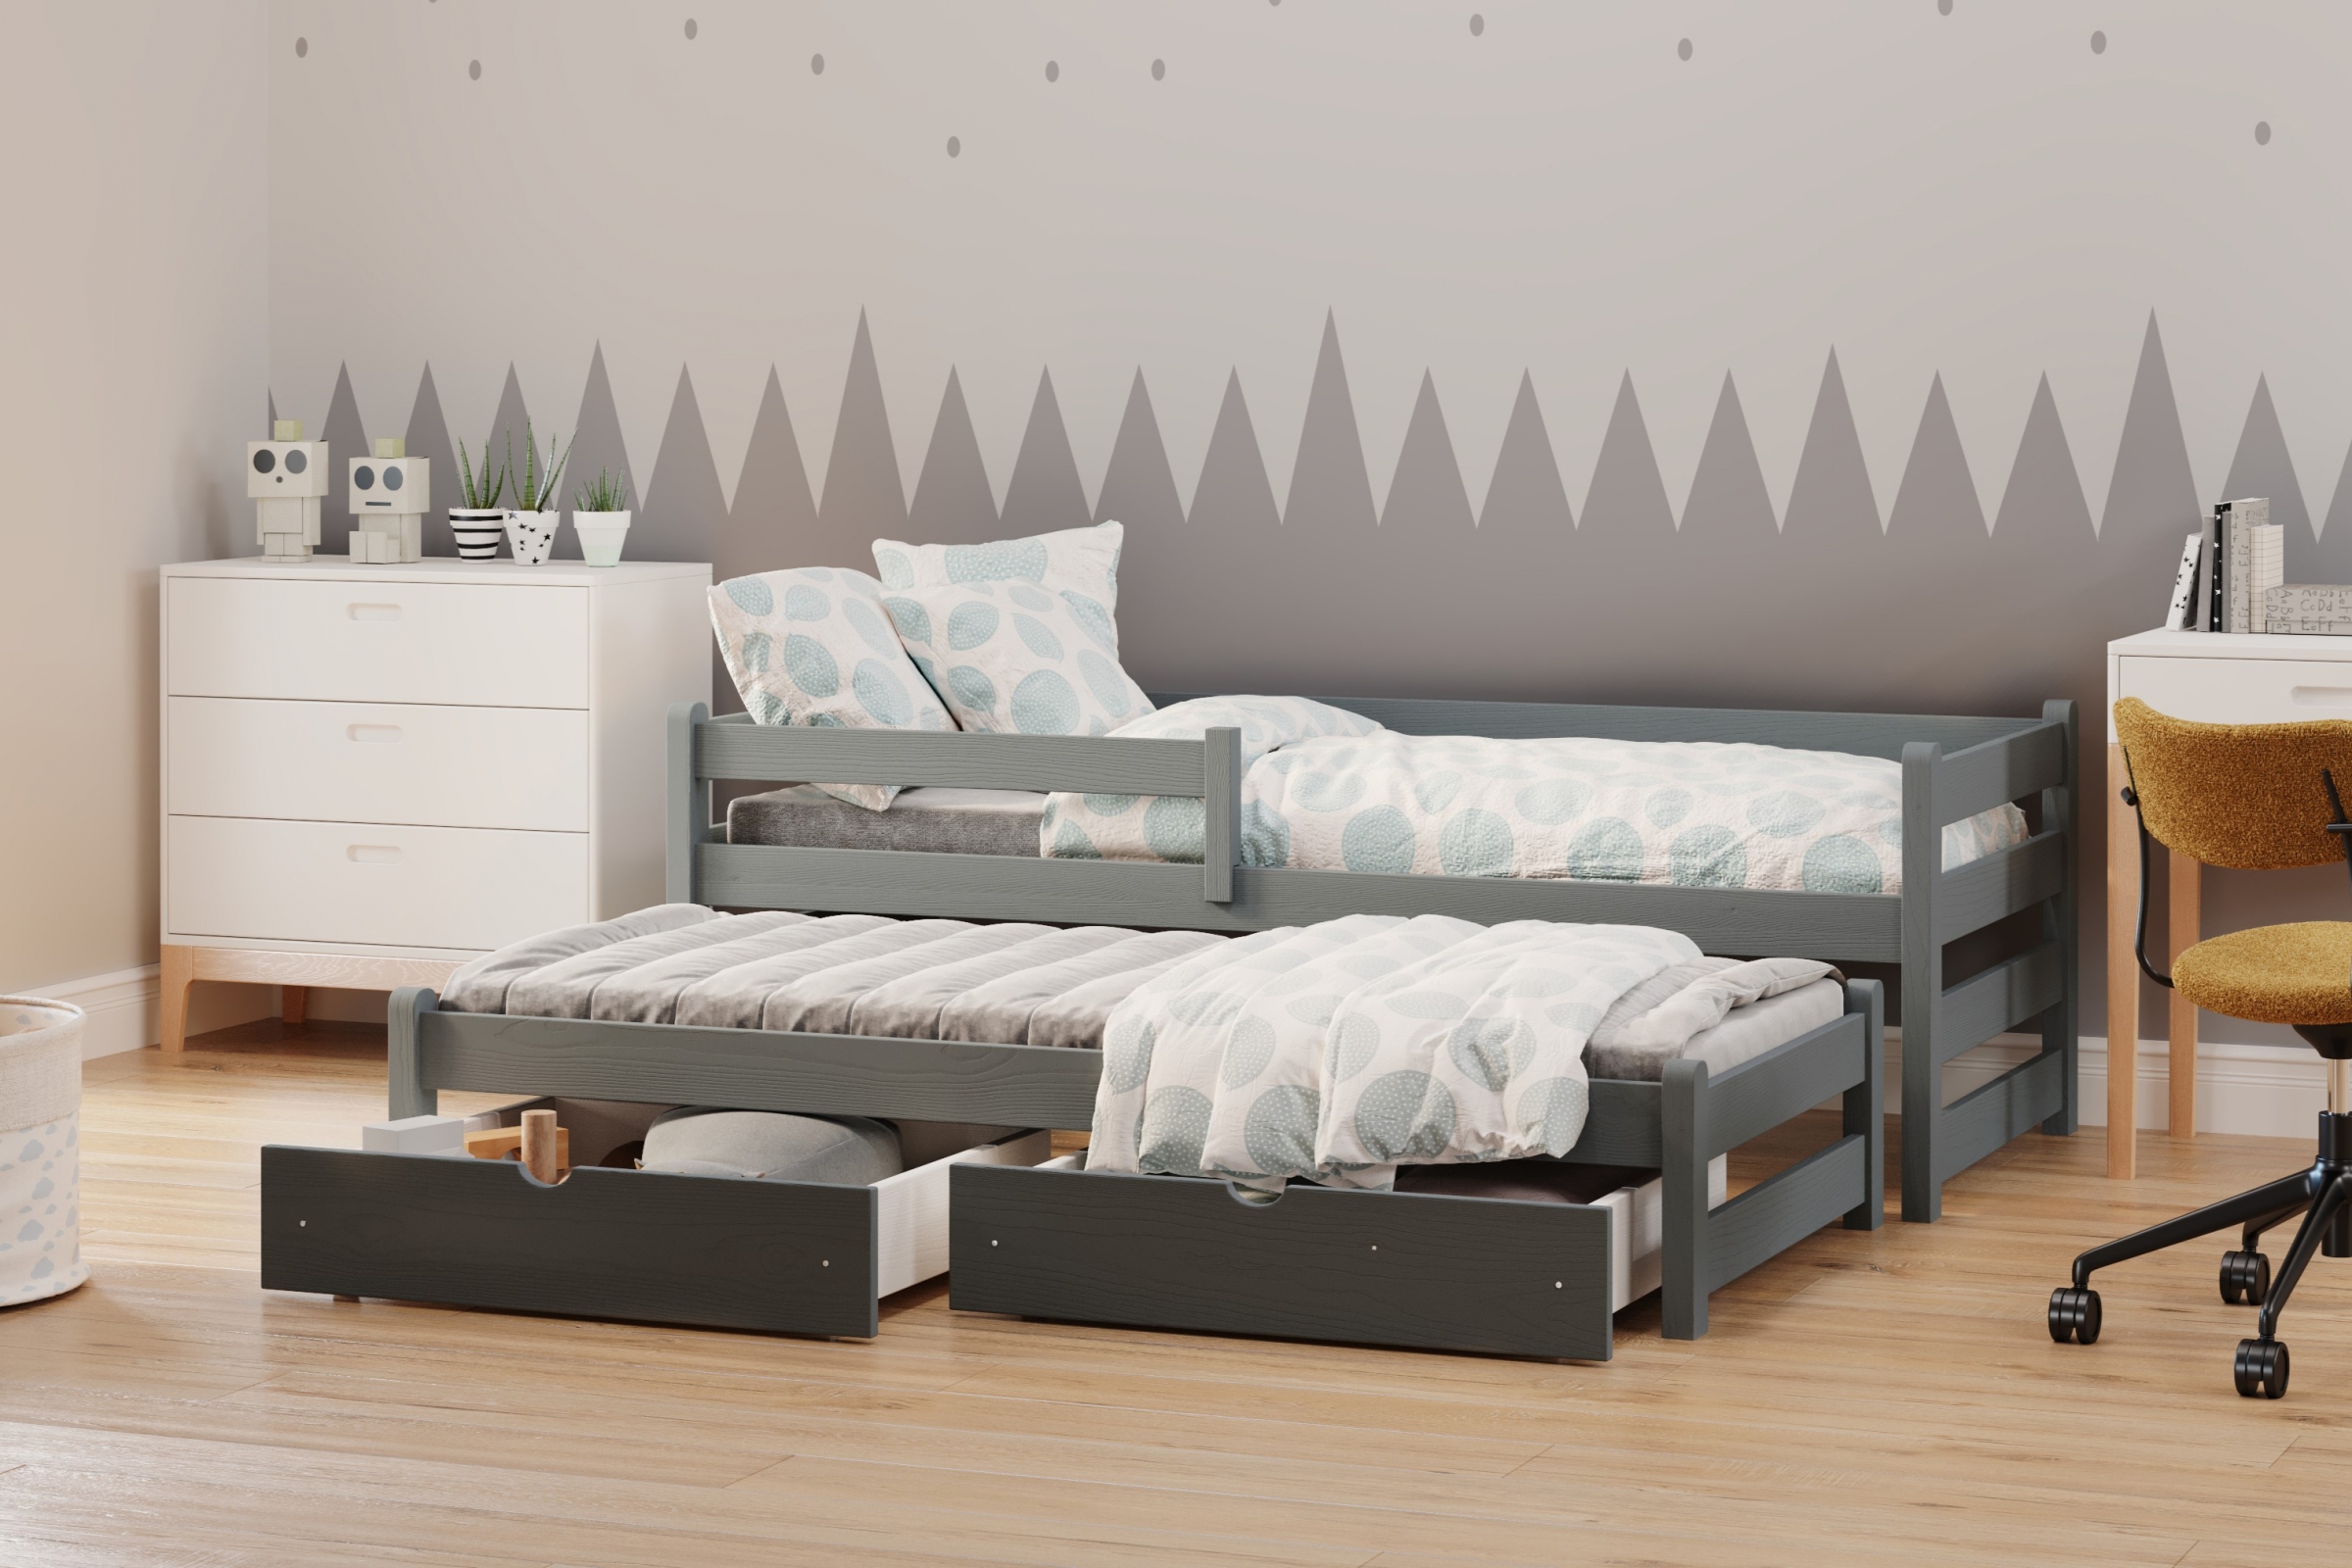 postel dětské přízemní výsuvná Alis DPV 001 - grafit, 80x200 postel přízemní výsuvná Alis - Barva Grafit - aranzacja